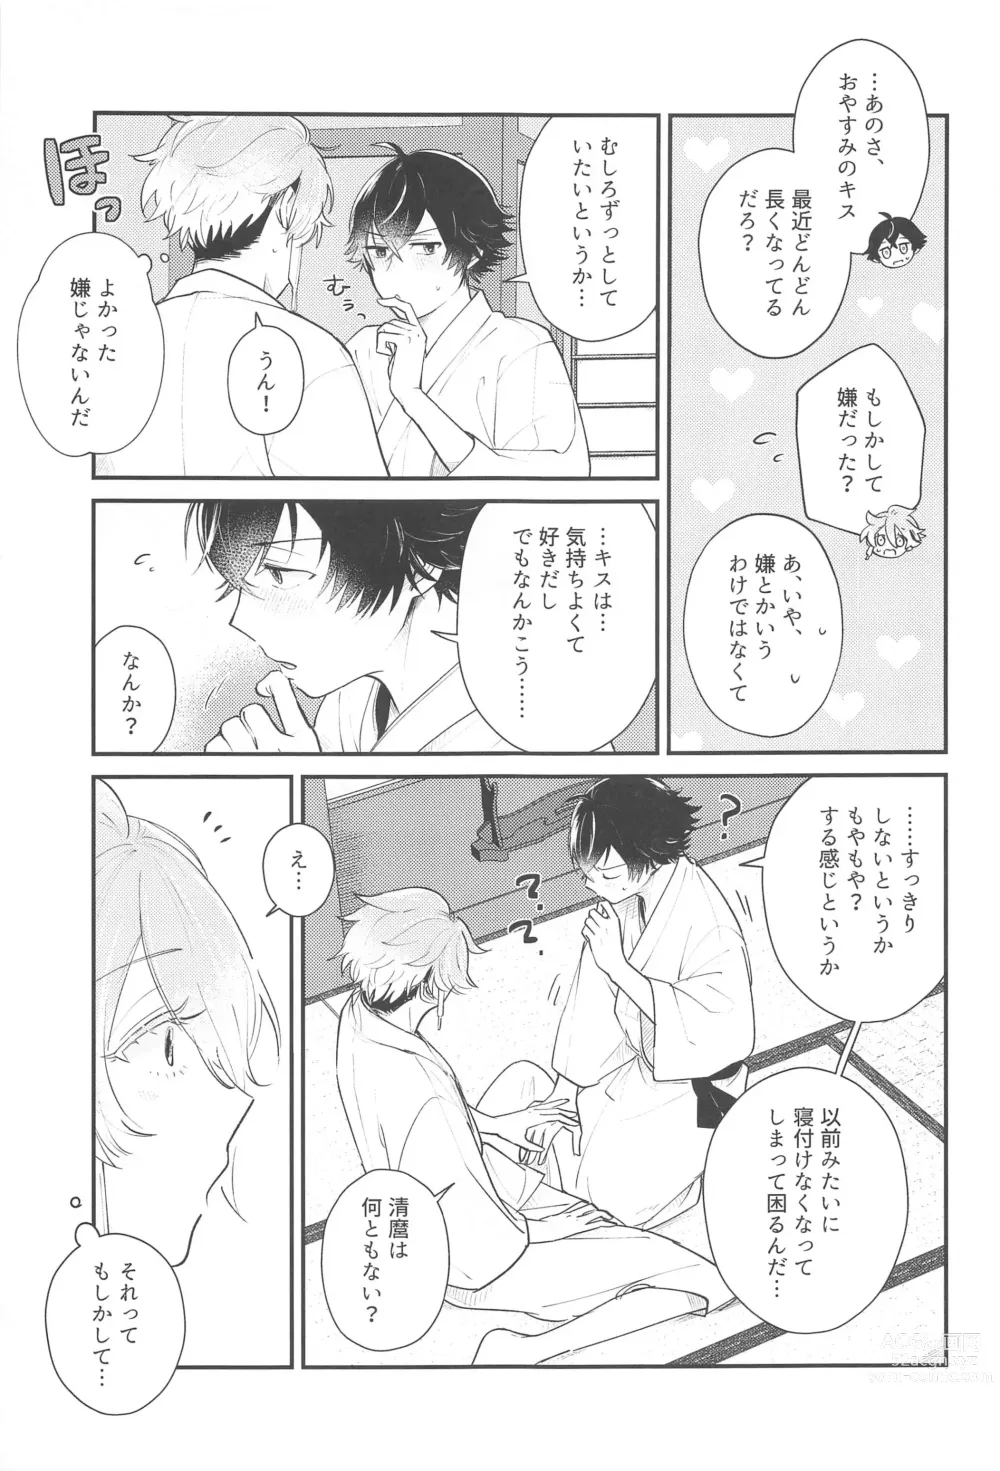 Page 4 of doujinshi Sonosaki wa Ariarito